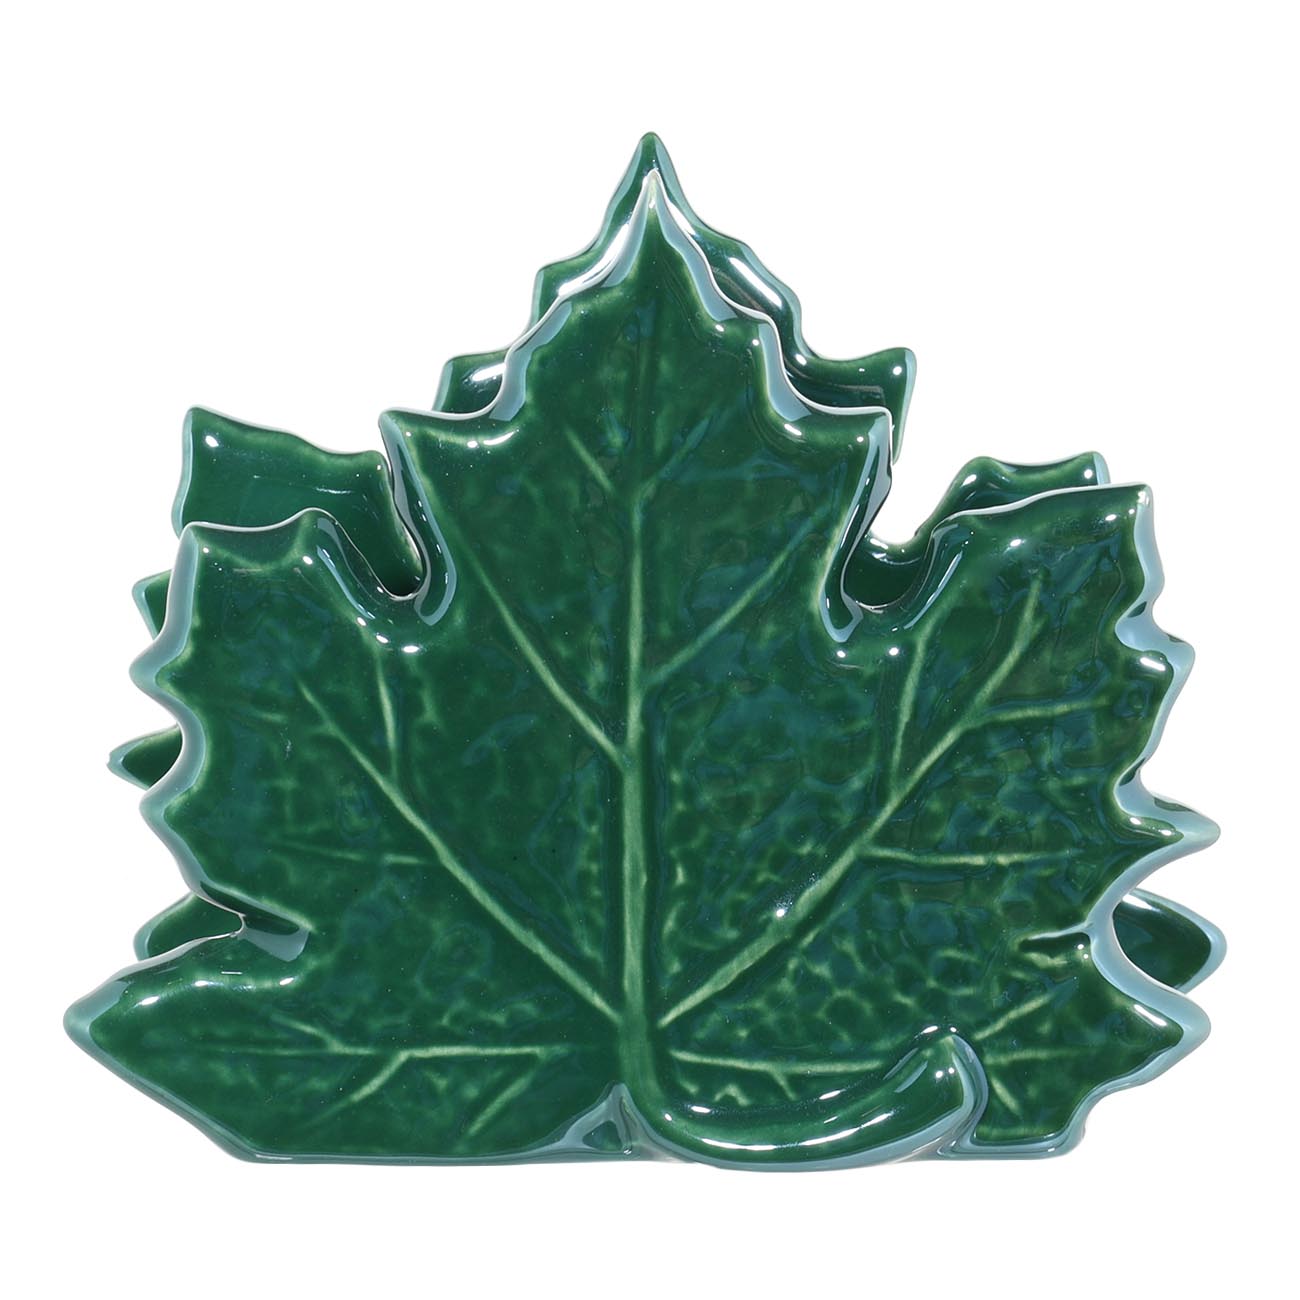 Салфетница, 10 см, керамика, зеленая, перламутр, Кленовый лист, Autumn bright